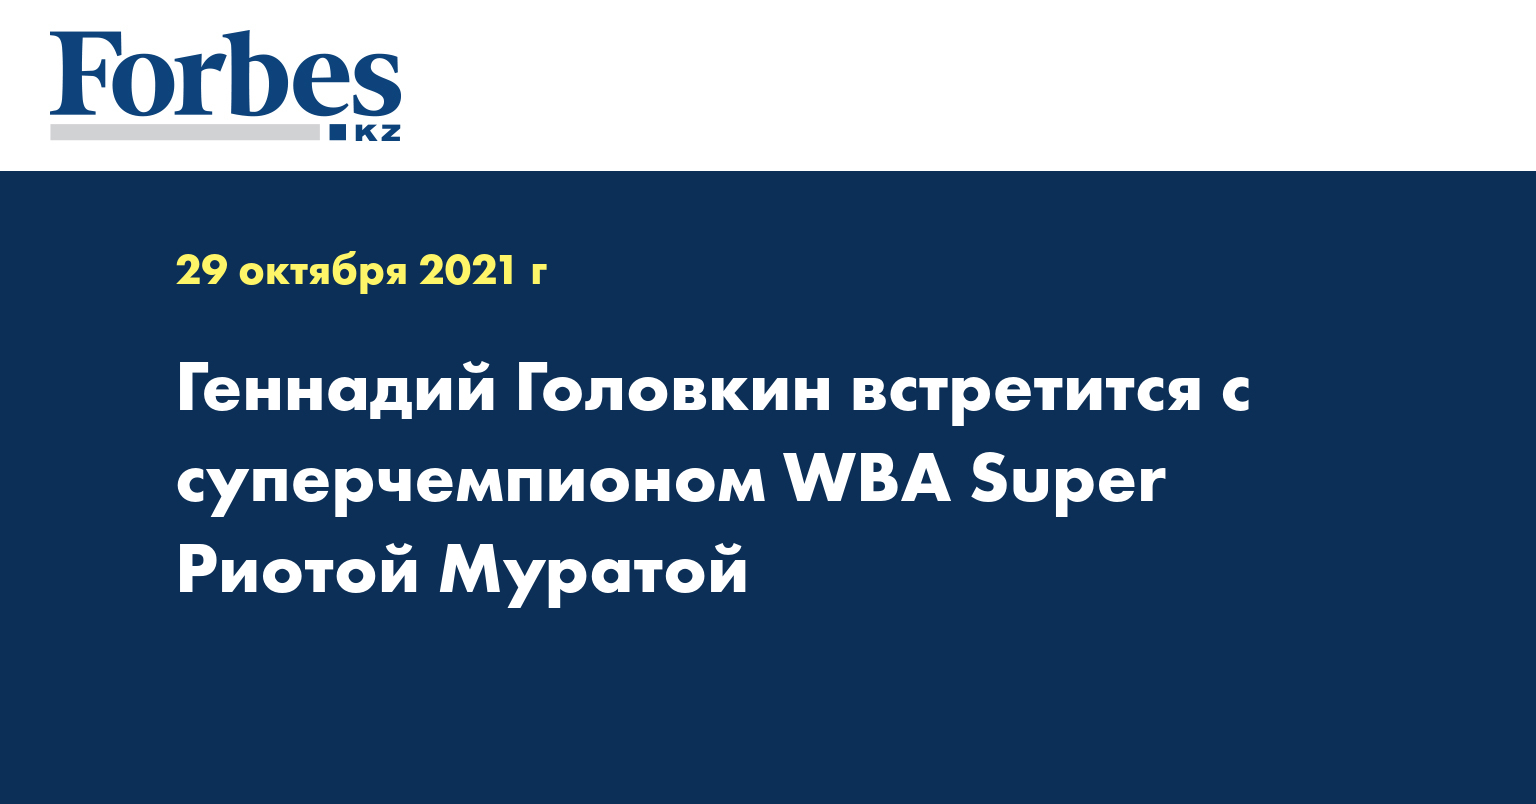 Геннадий Головкин встретится с суперчемпионом WBA Super Риотой Муратой